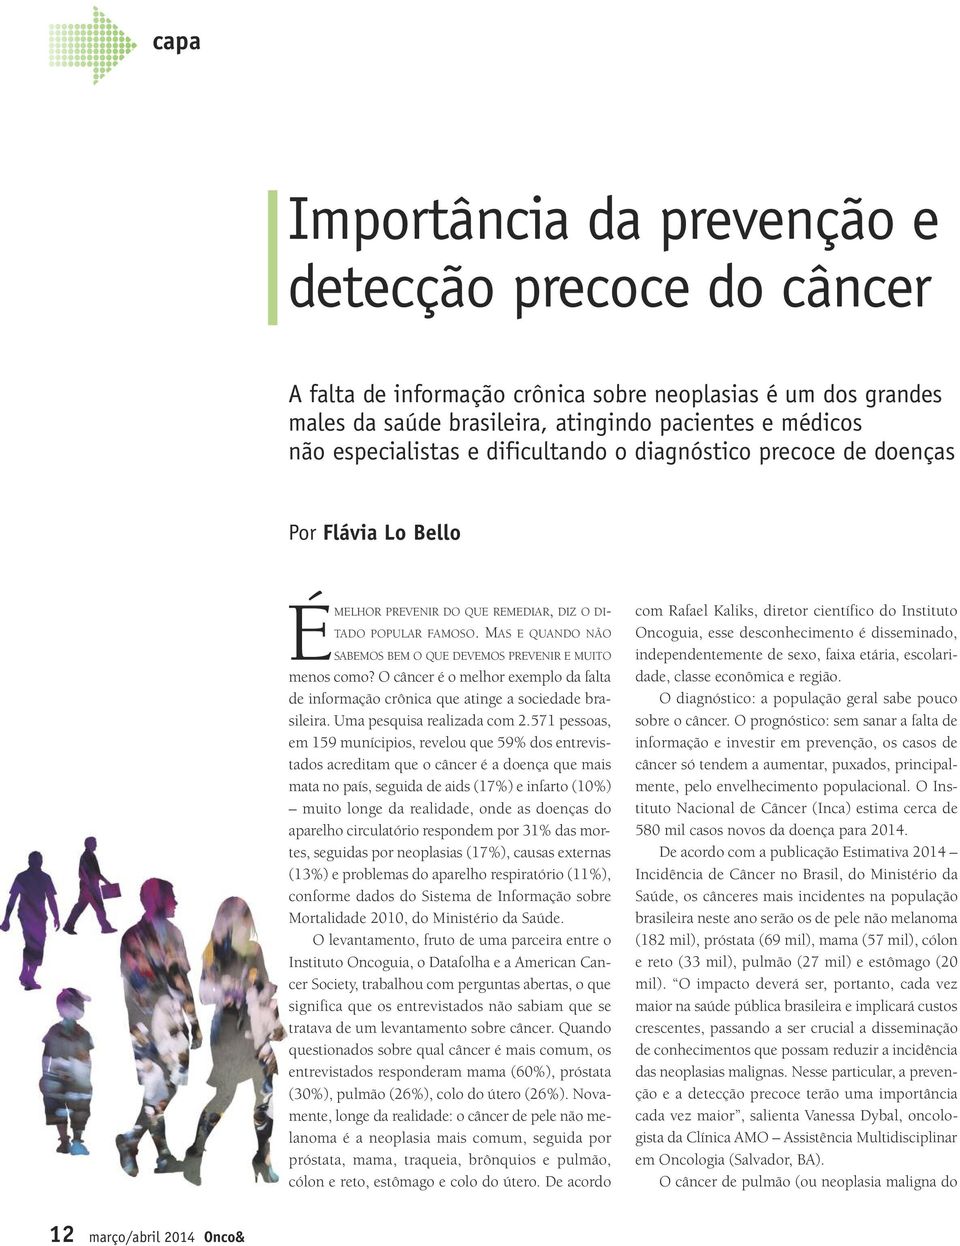 MAS E QUANDO NÃO SABEMOS BEM O QUE DEVEMOS PREVENIR E MUITO menos como? O câncer é o melhor exemplo da falta de informação crônica que atinge a sociedade brasileira. Uma pesquisa realizada com 2.